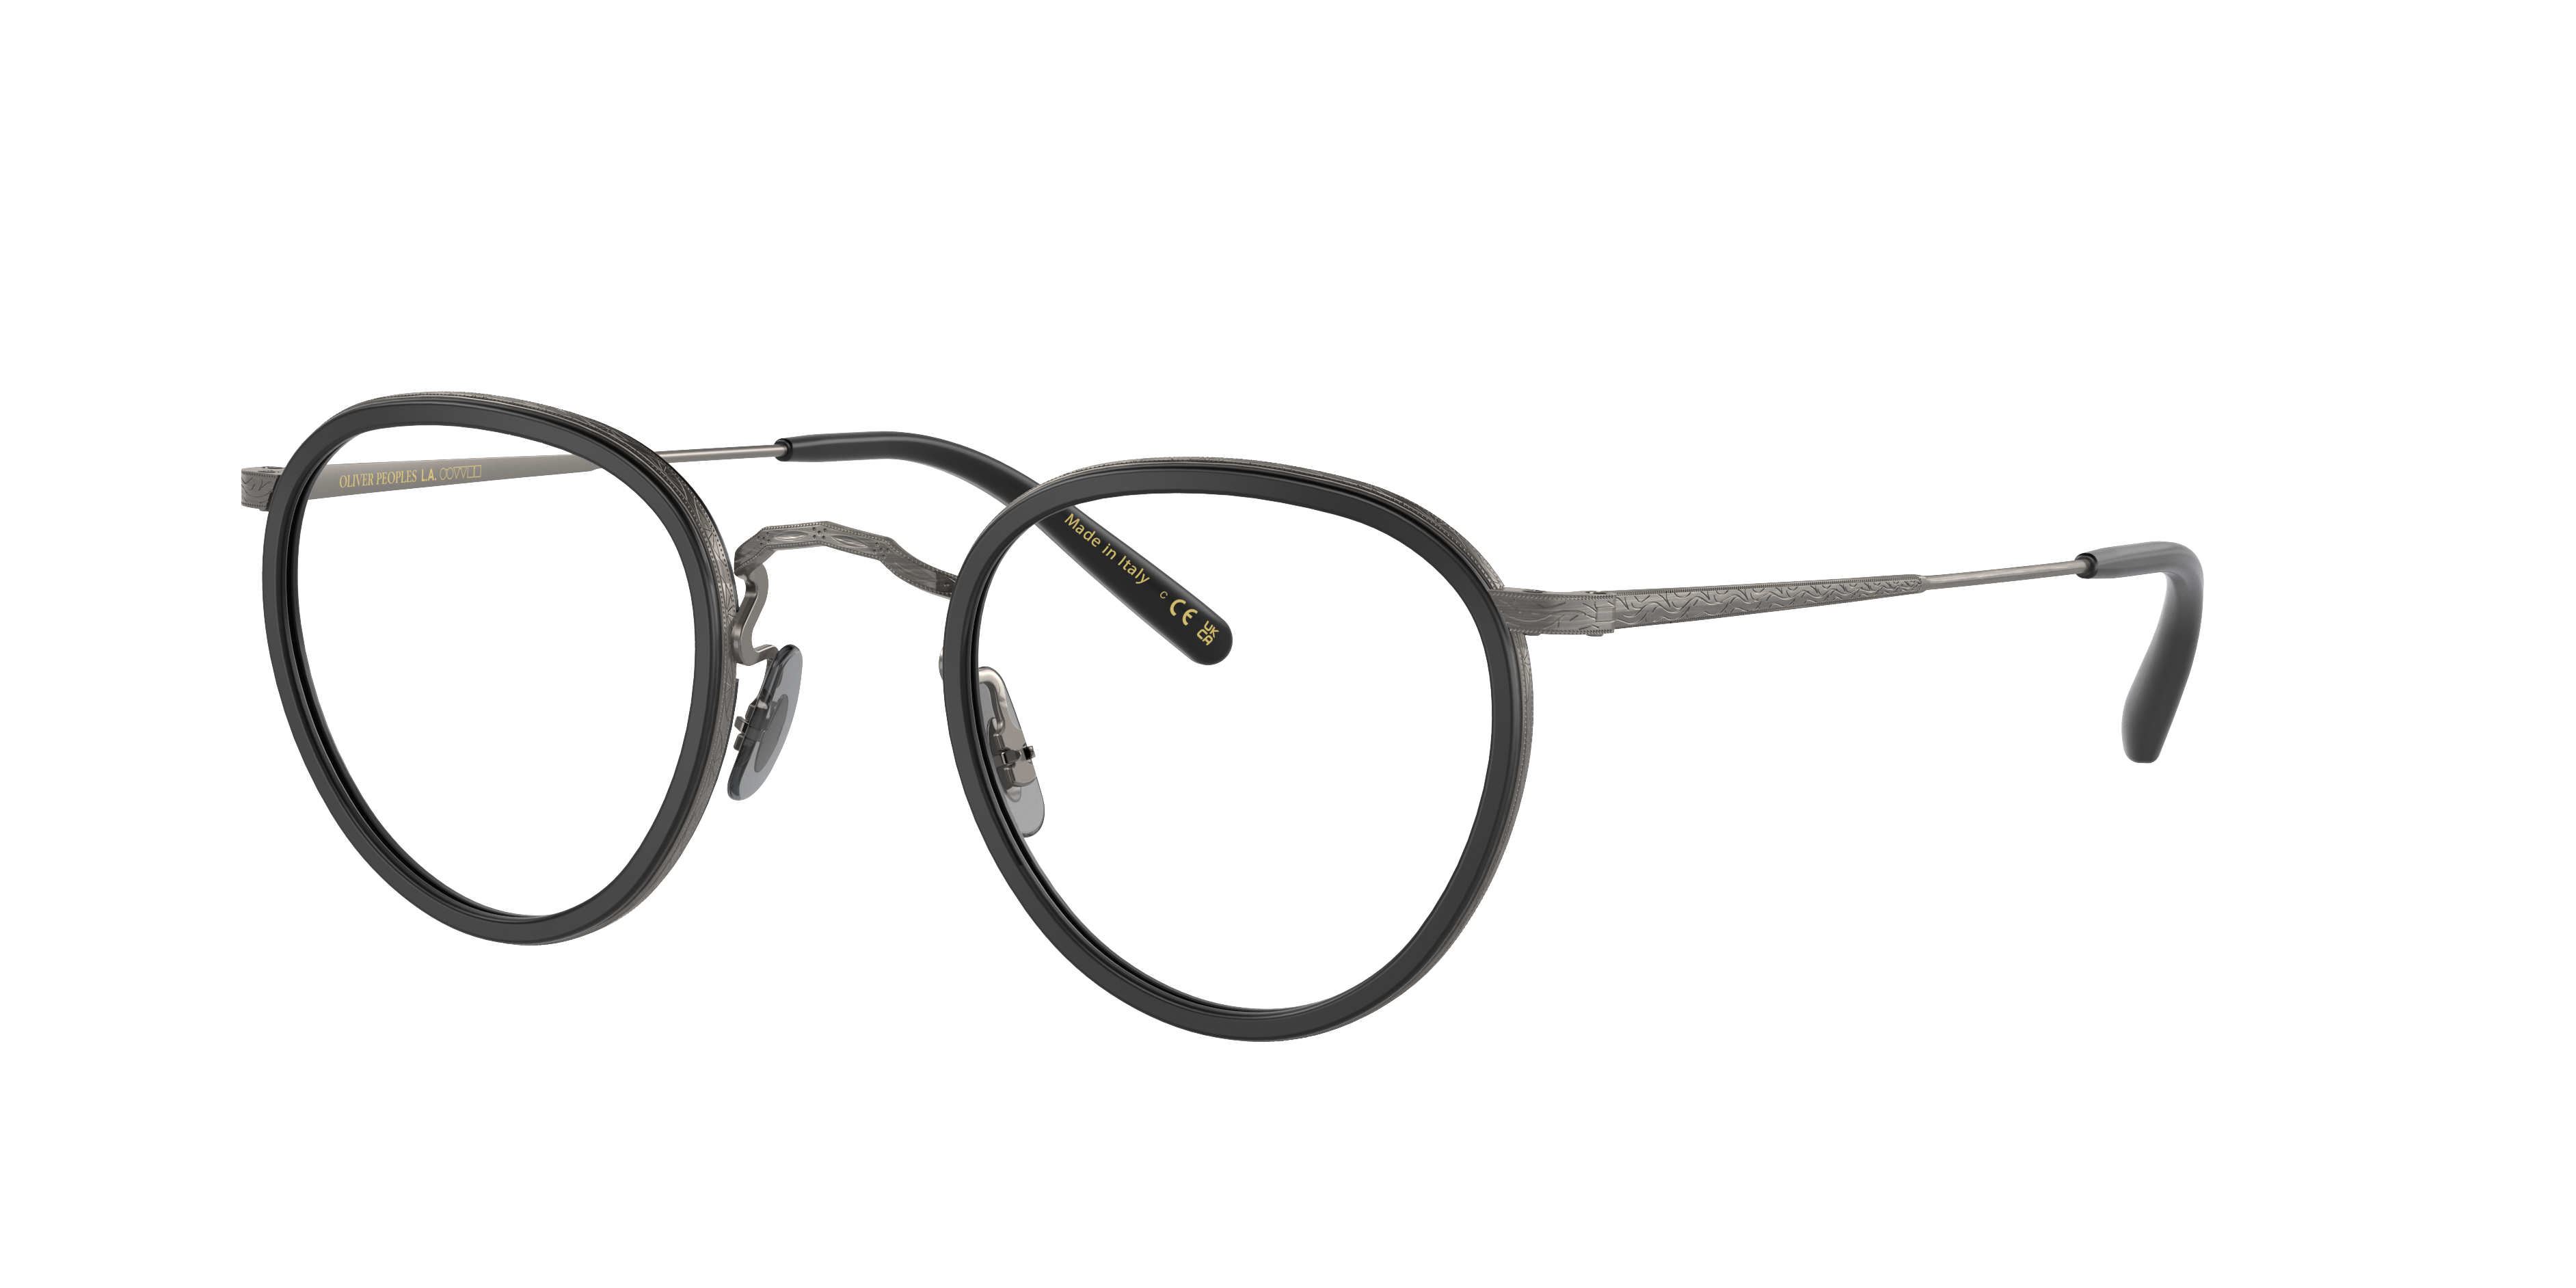 OV1104 Eyeglasses Semi-Matte Black-Antique Pewter | Oliver Peoples USA